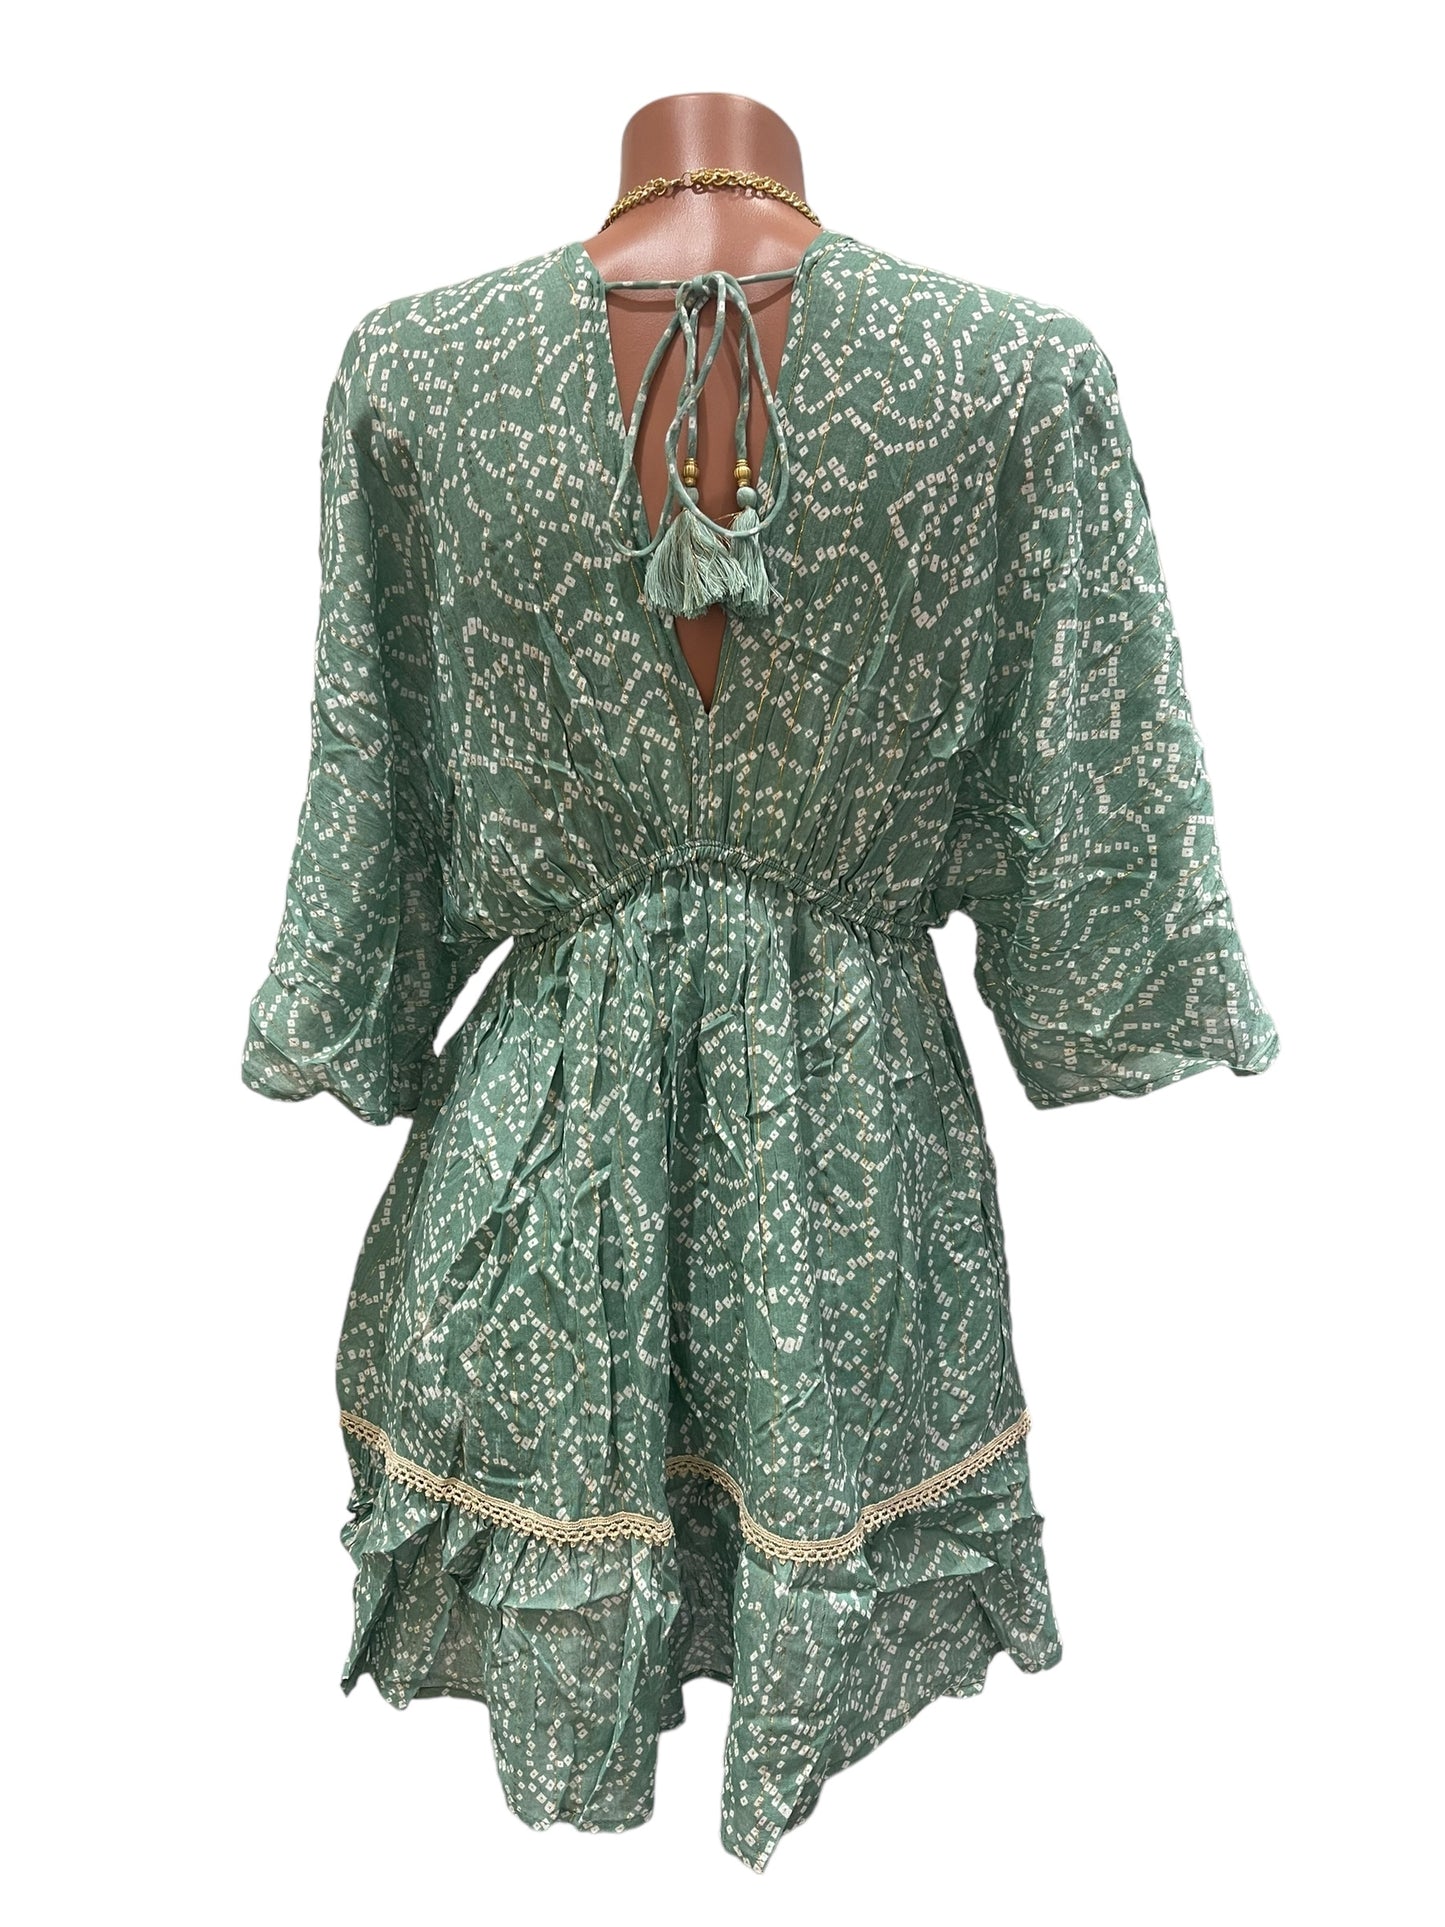 Flor Green Short Dress.